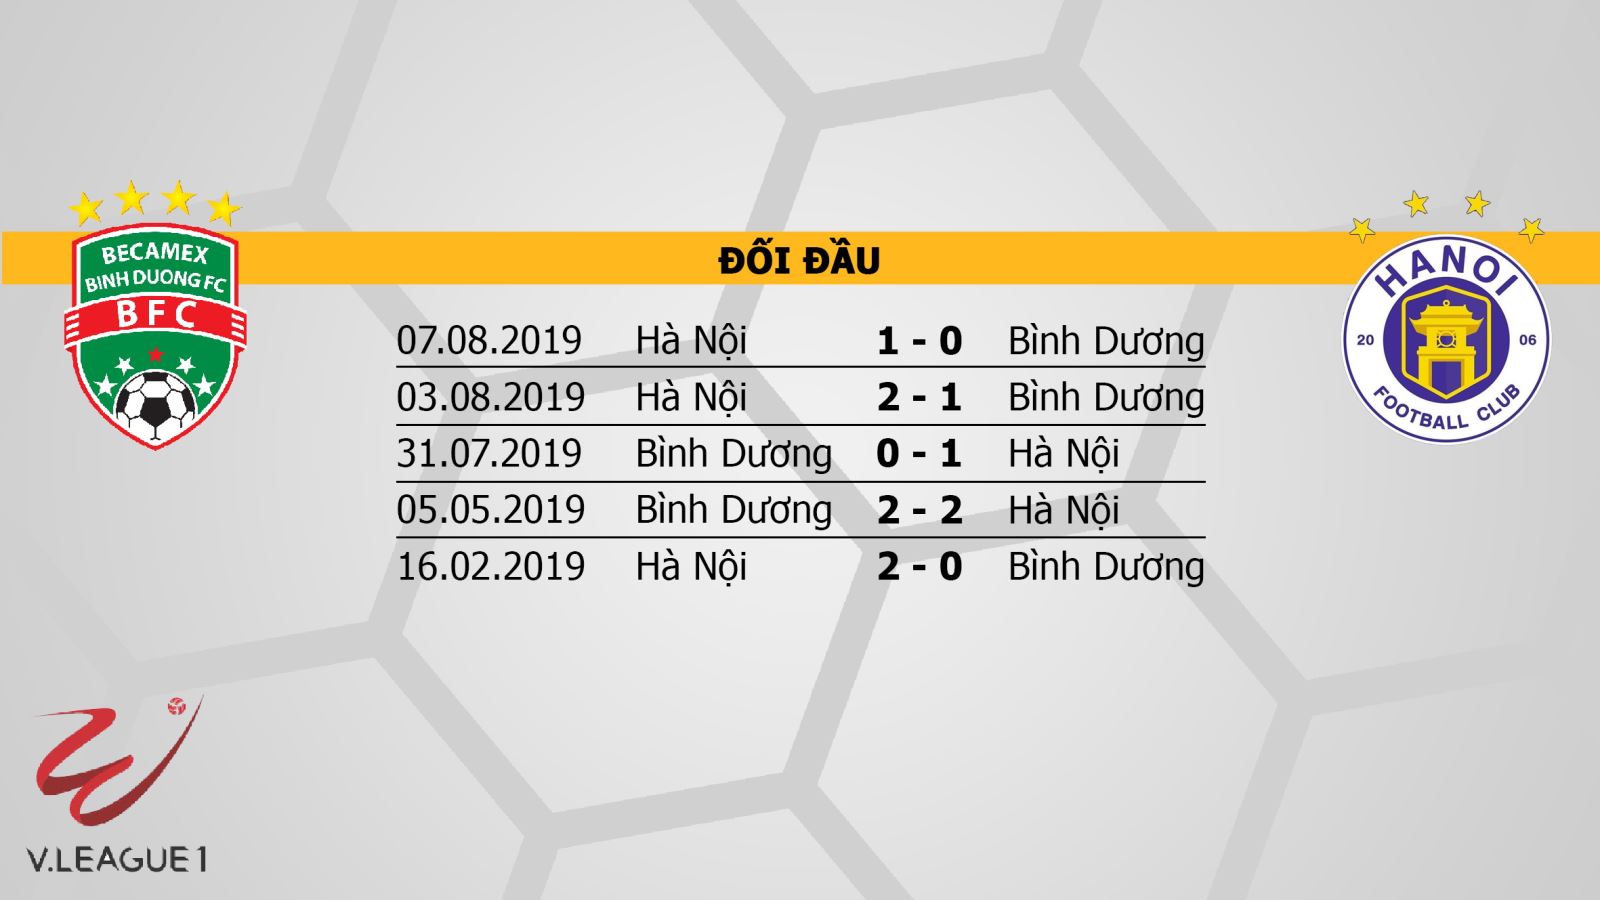 Becamex Bình Dương vs Hà Nội, Bình Dương đấu với Hà Nội, nhận định, dự đoán, trực tiếp bóng đá, dự đoán, kèo bóng đá, V-League 